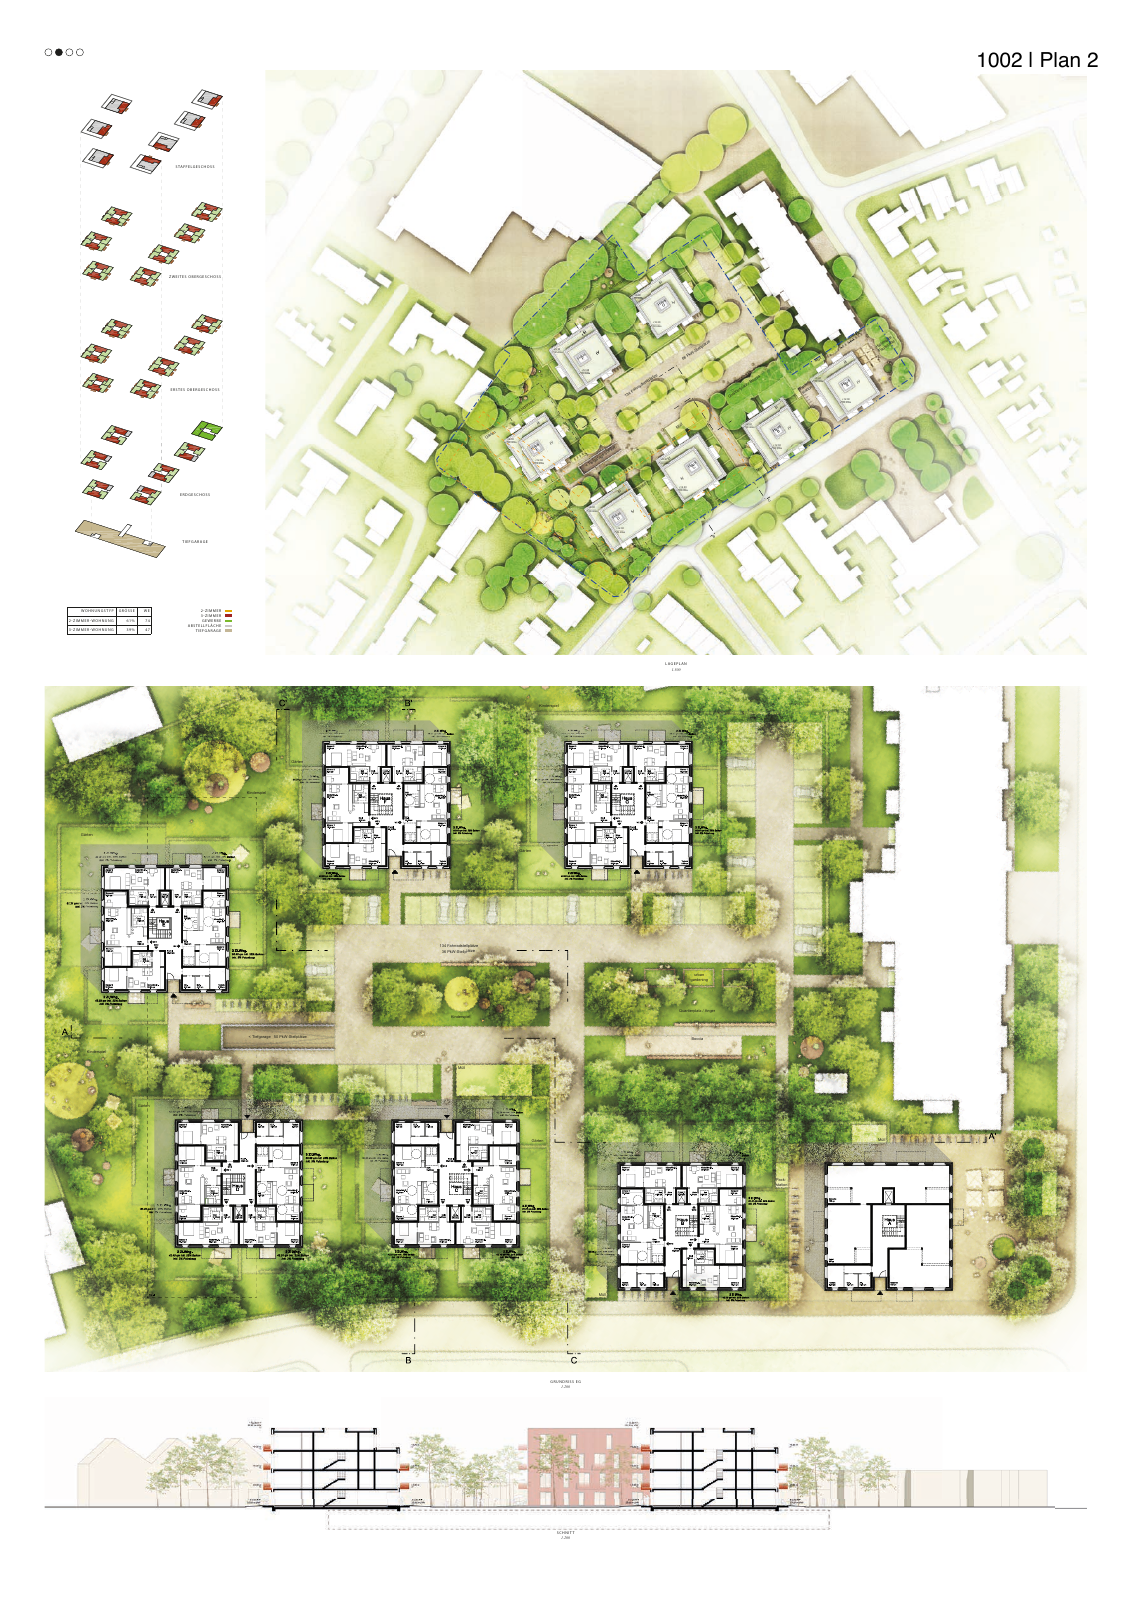 Vorschau Neubau von 100 Wohneinheiten [Nordhorn] Seite 11